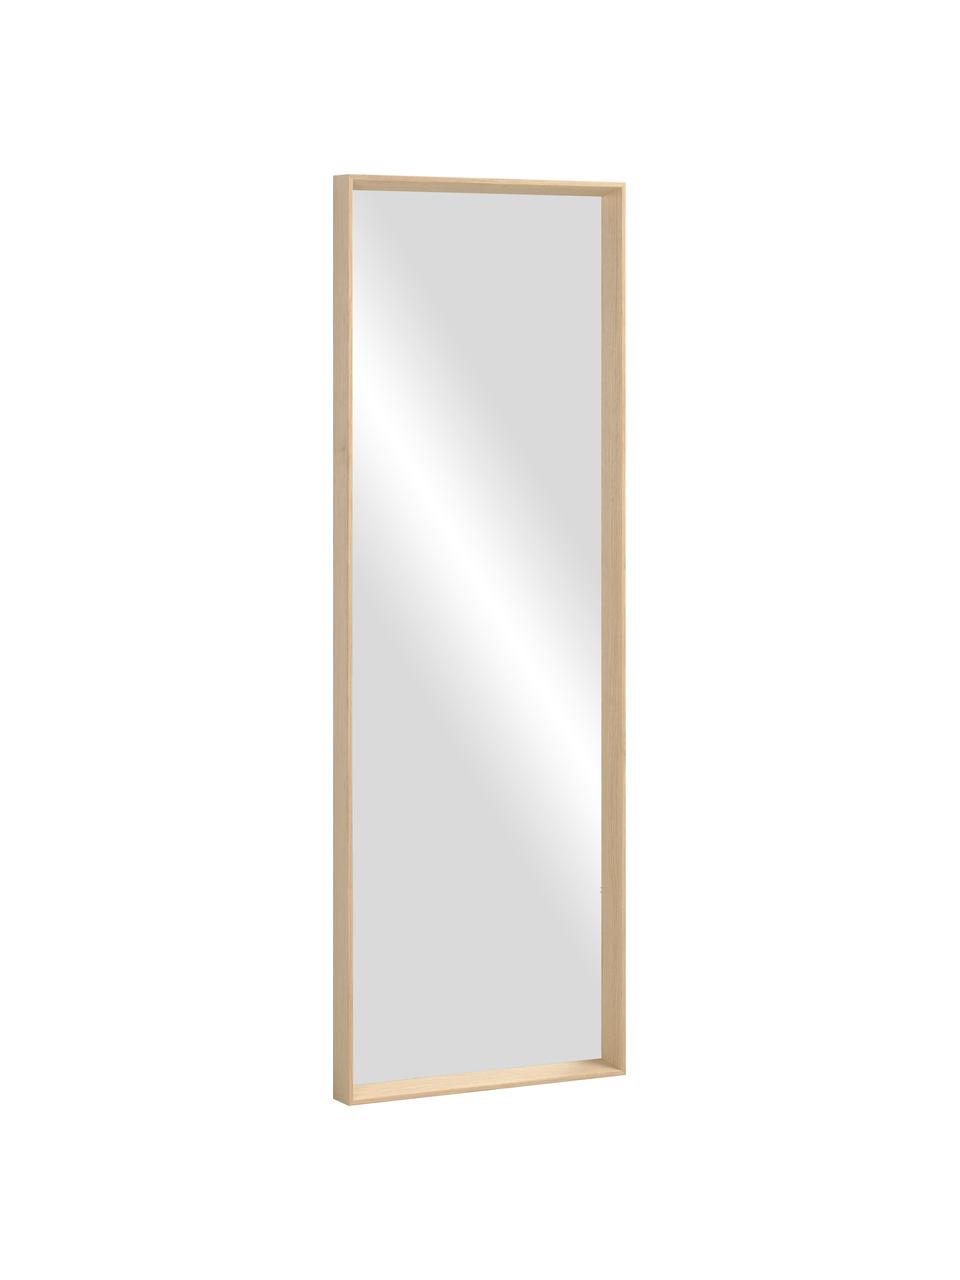 Obdélníkové nástěnné zrcadlo s dřevěným rámem Nerina, Béžová, Š 52 cm, V 152 cm